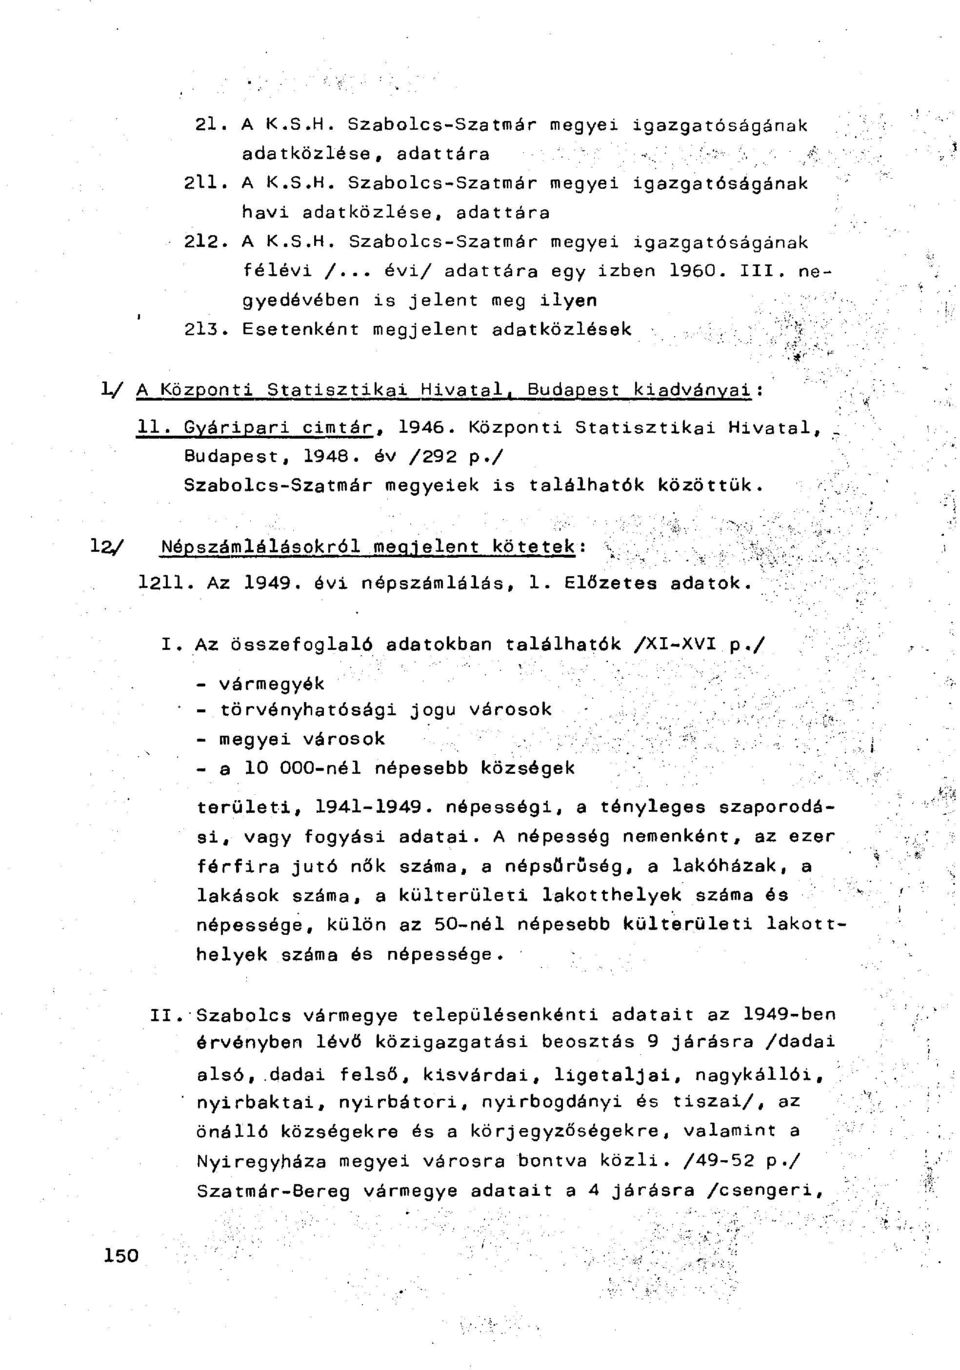 Központi Statisztikai Hivatal, Budapest, 1948. óv /292 p./ Szabolcs-Szatmár megyeiek is találhatók közöttük. 12/ Népszámlálásokról megjelent kötetek : 1211. Az 1949. évi népszámlálás, 1.